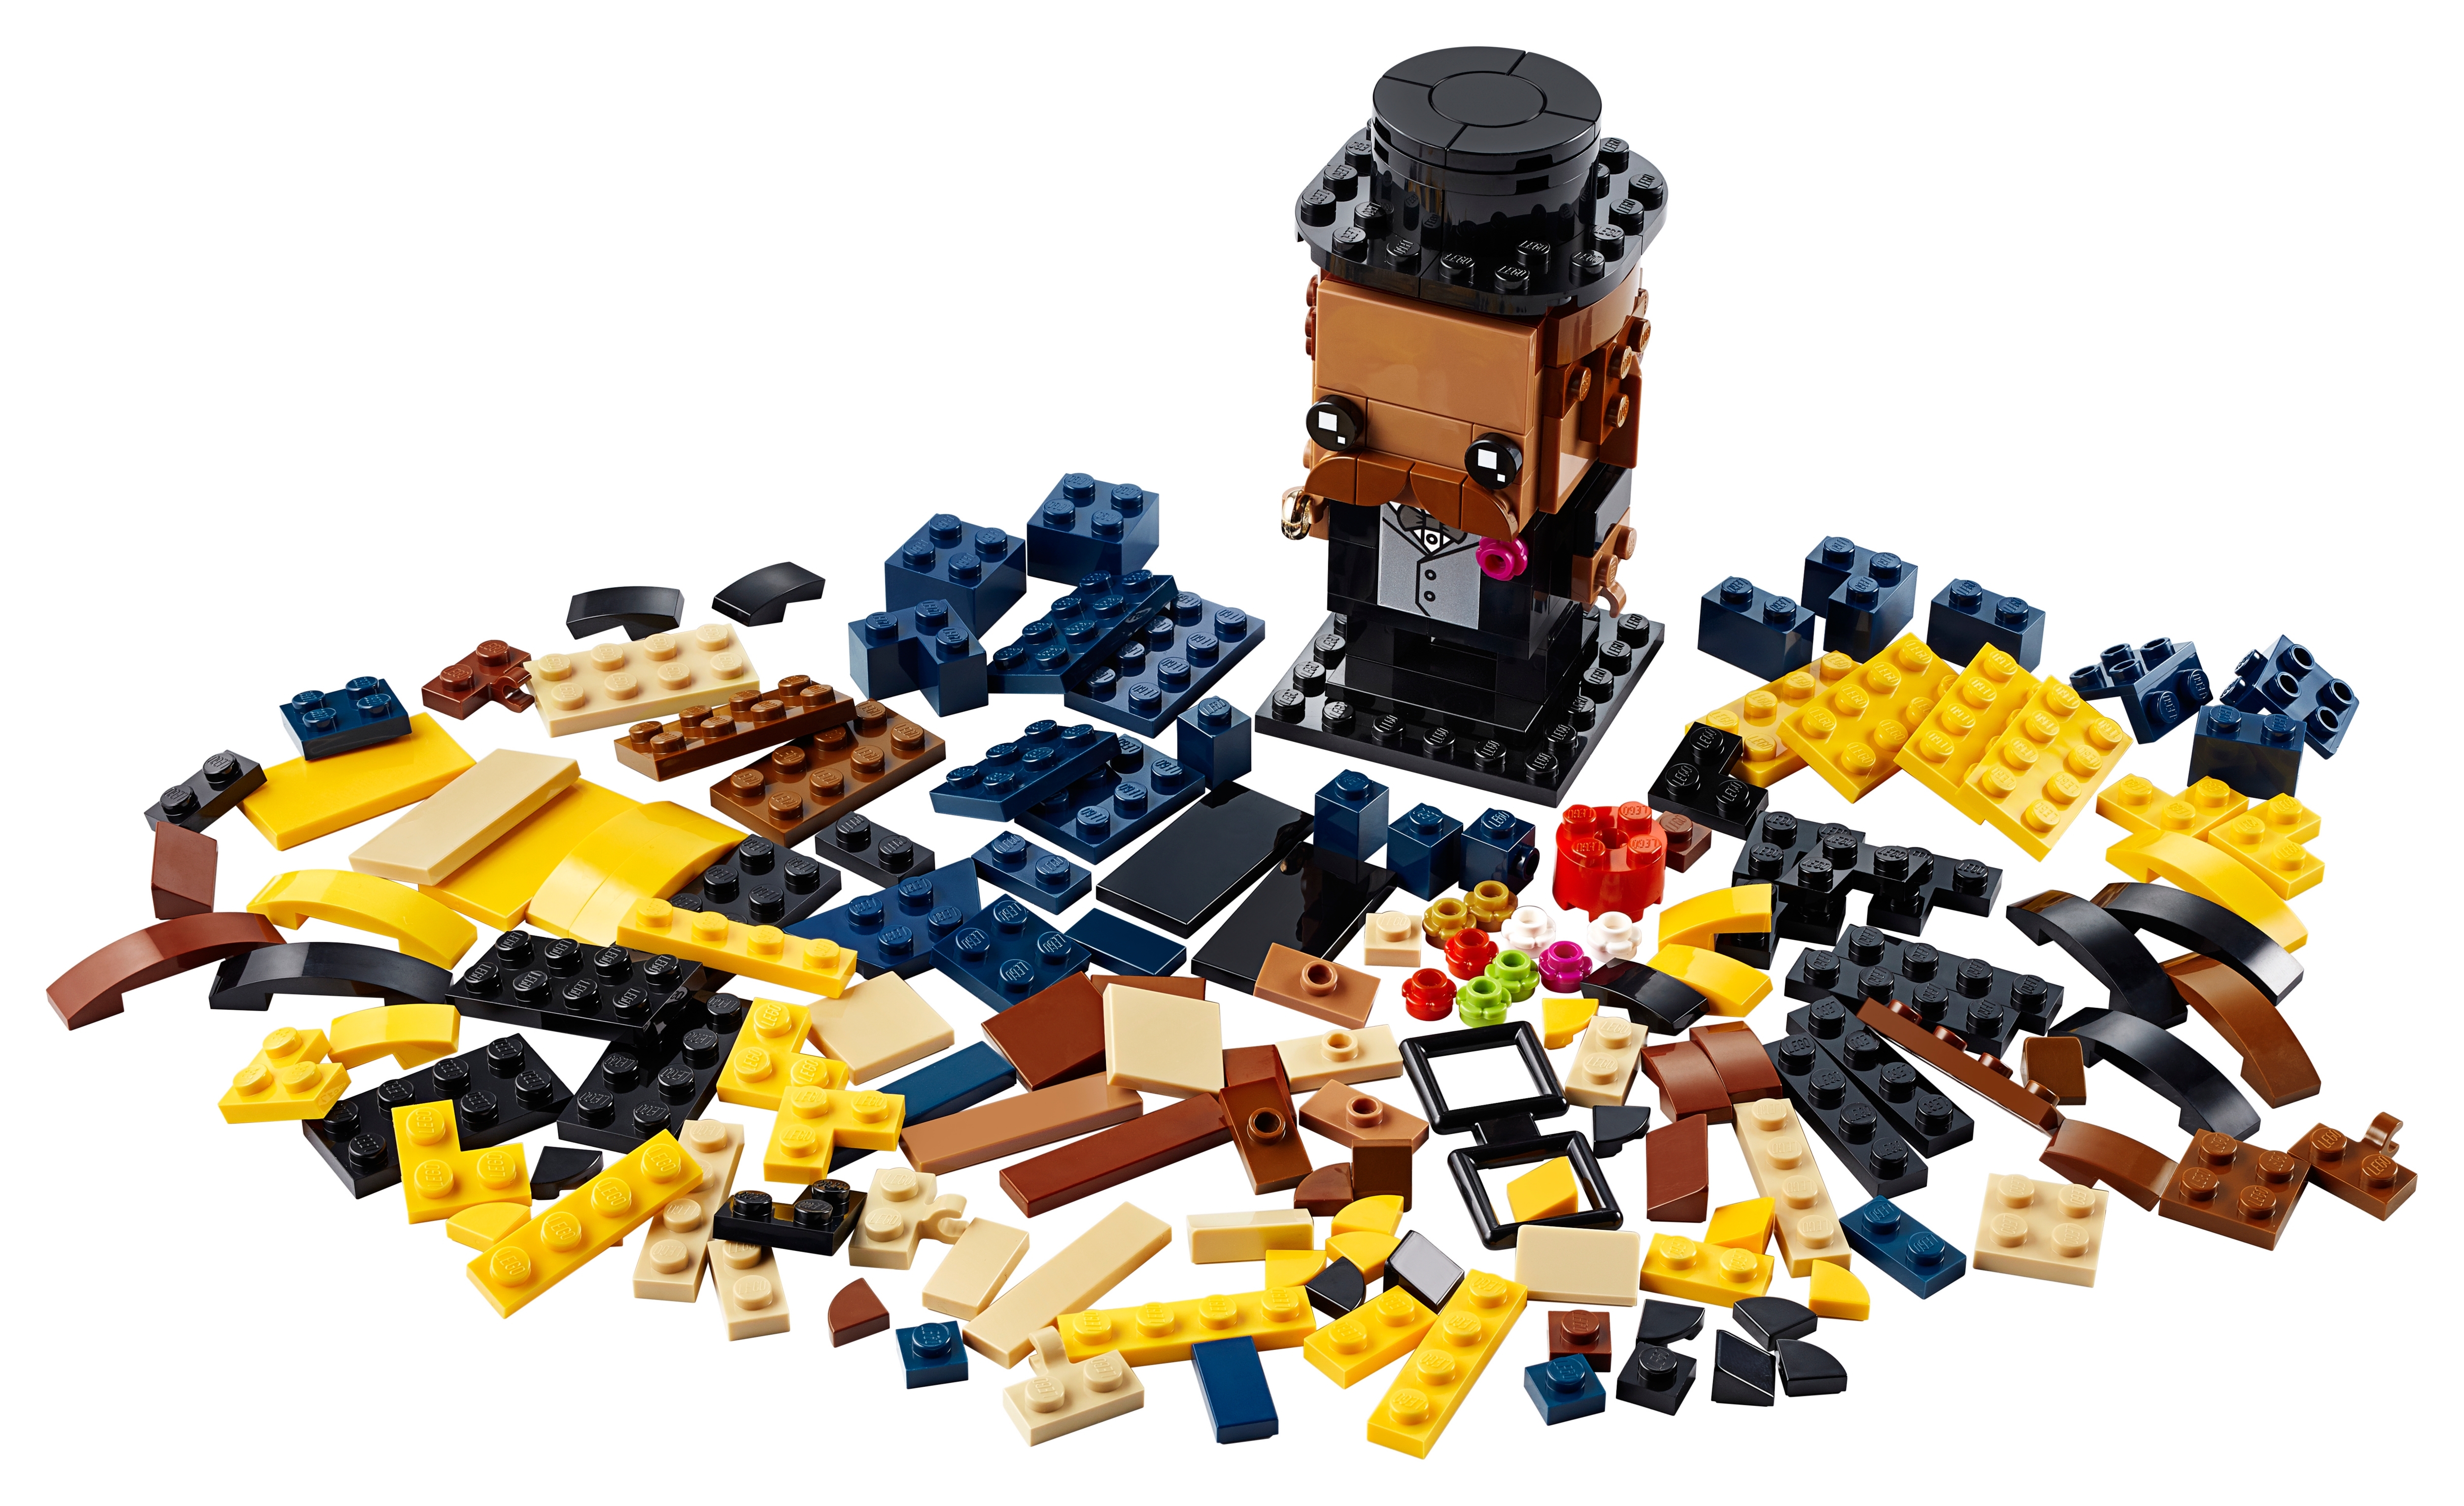 Sale | Official LEGO® Shop US